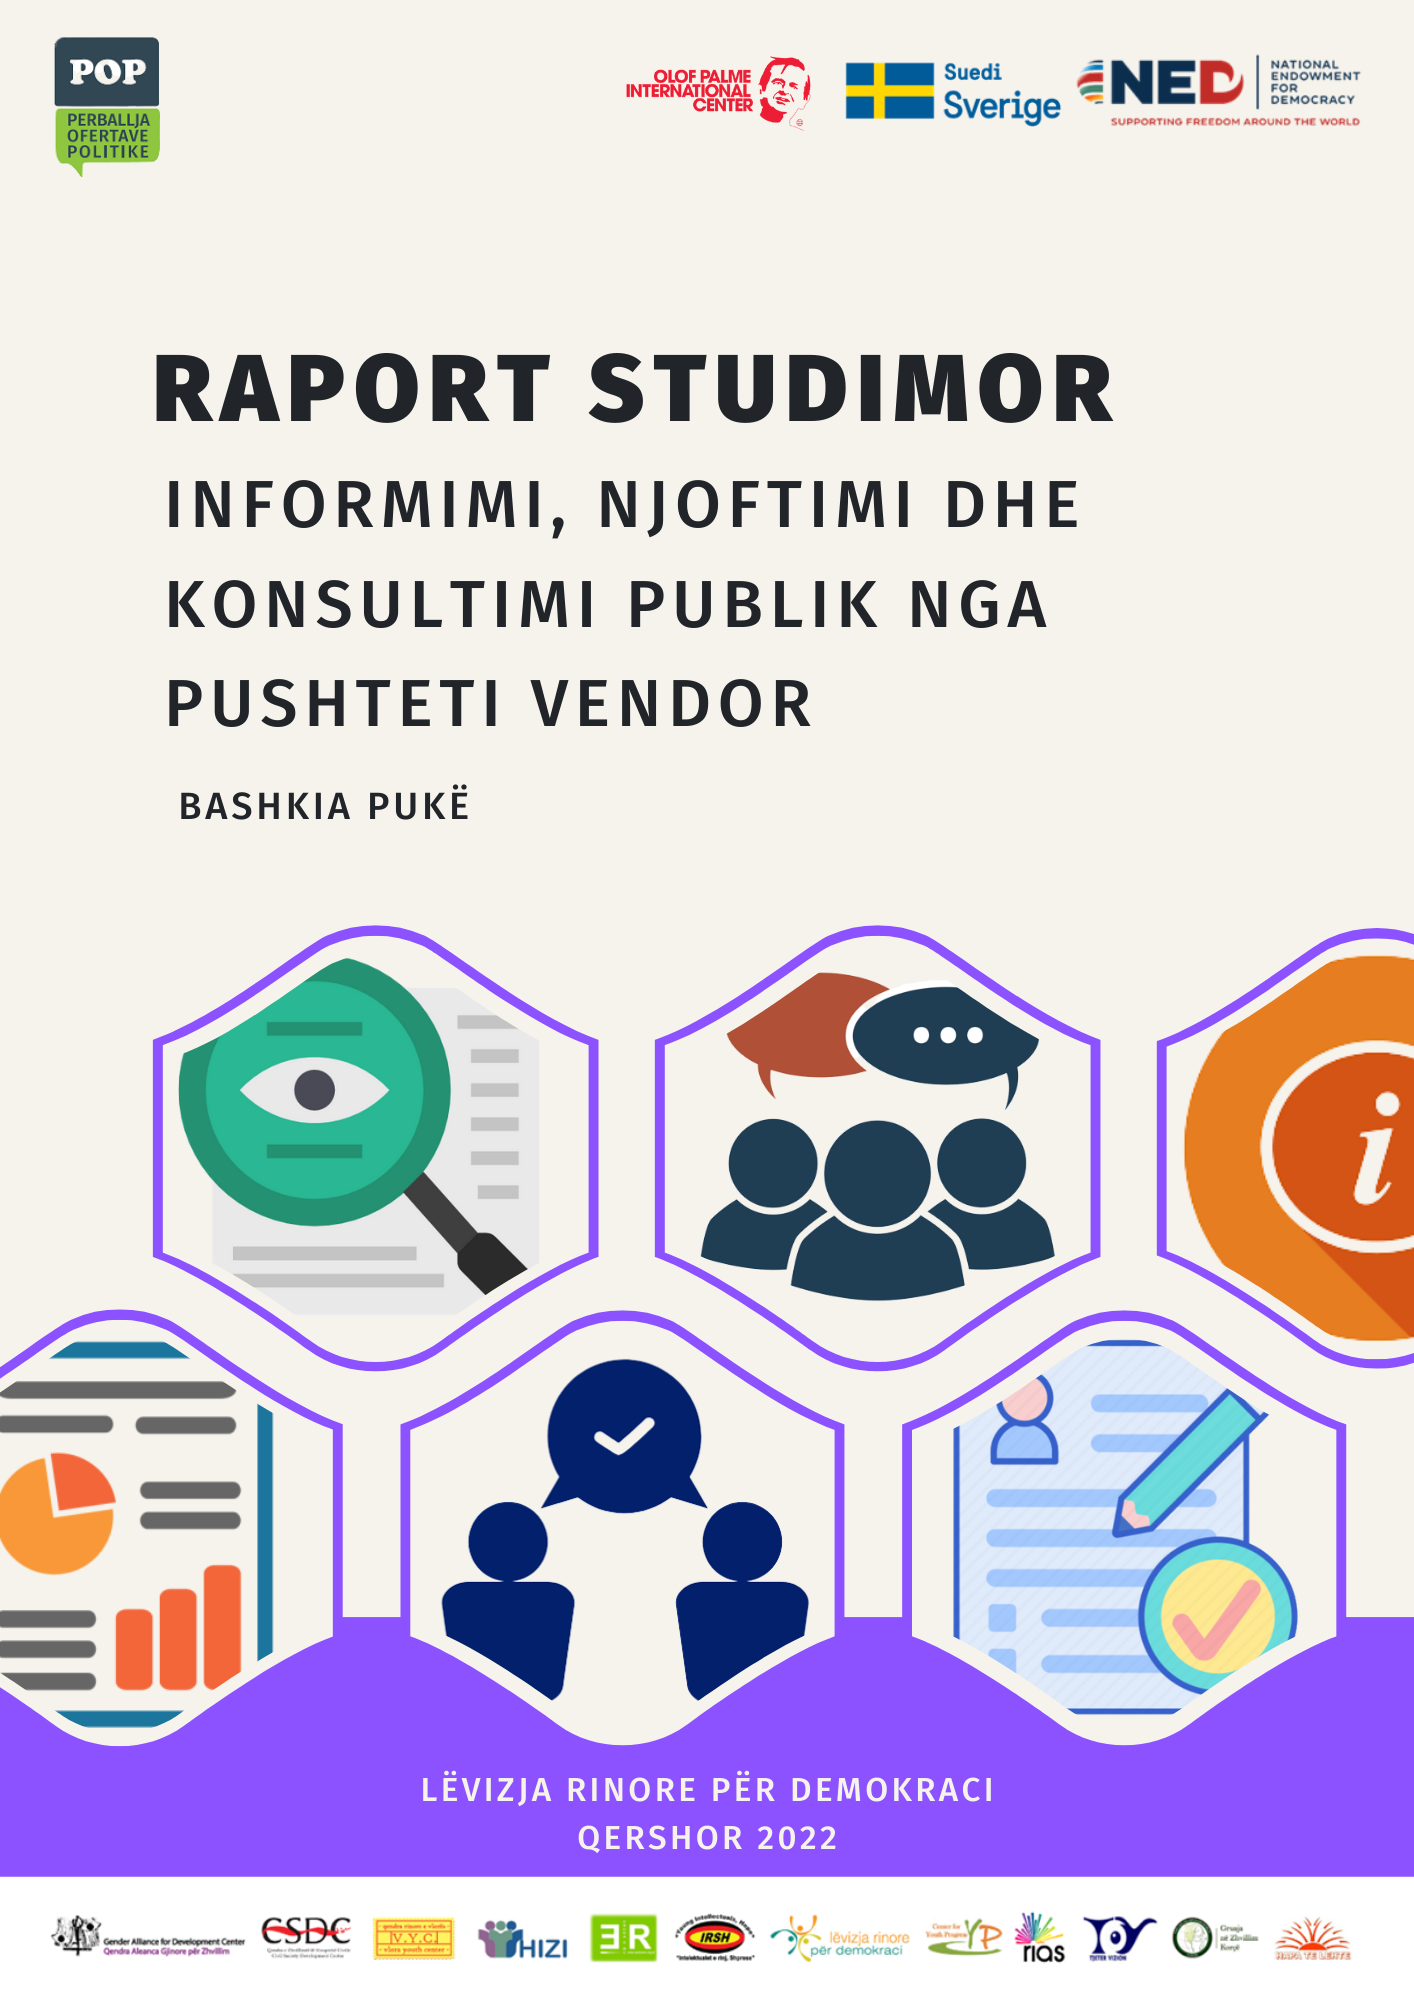 Raporti Studimor “Informimi, Njoftimi dhe Konsultimi Publik” – Bashkia Pukë